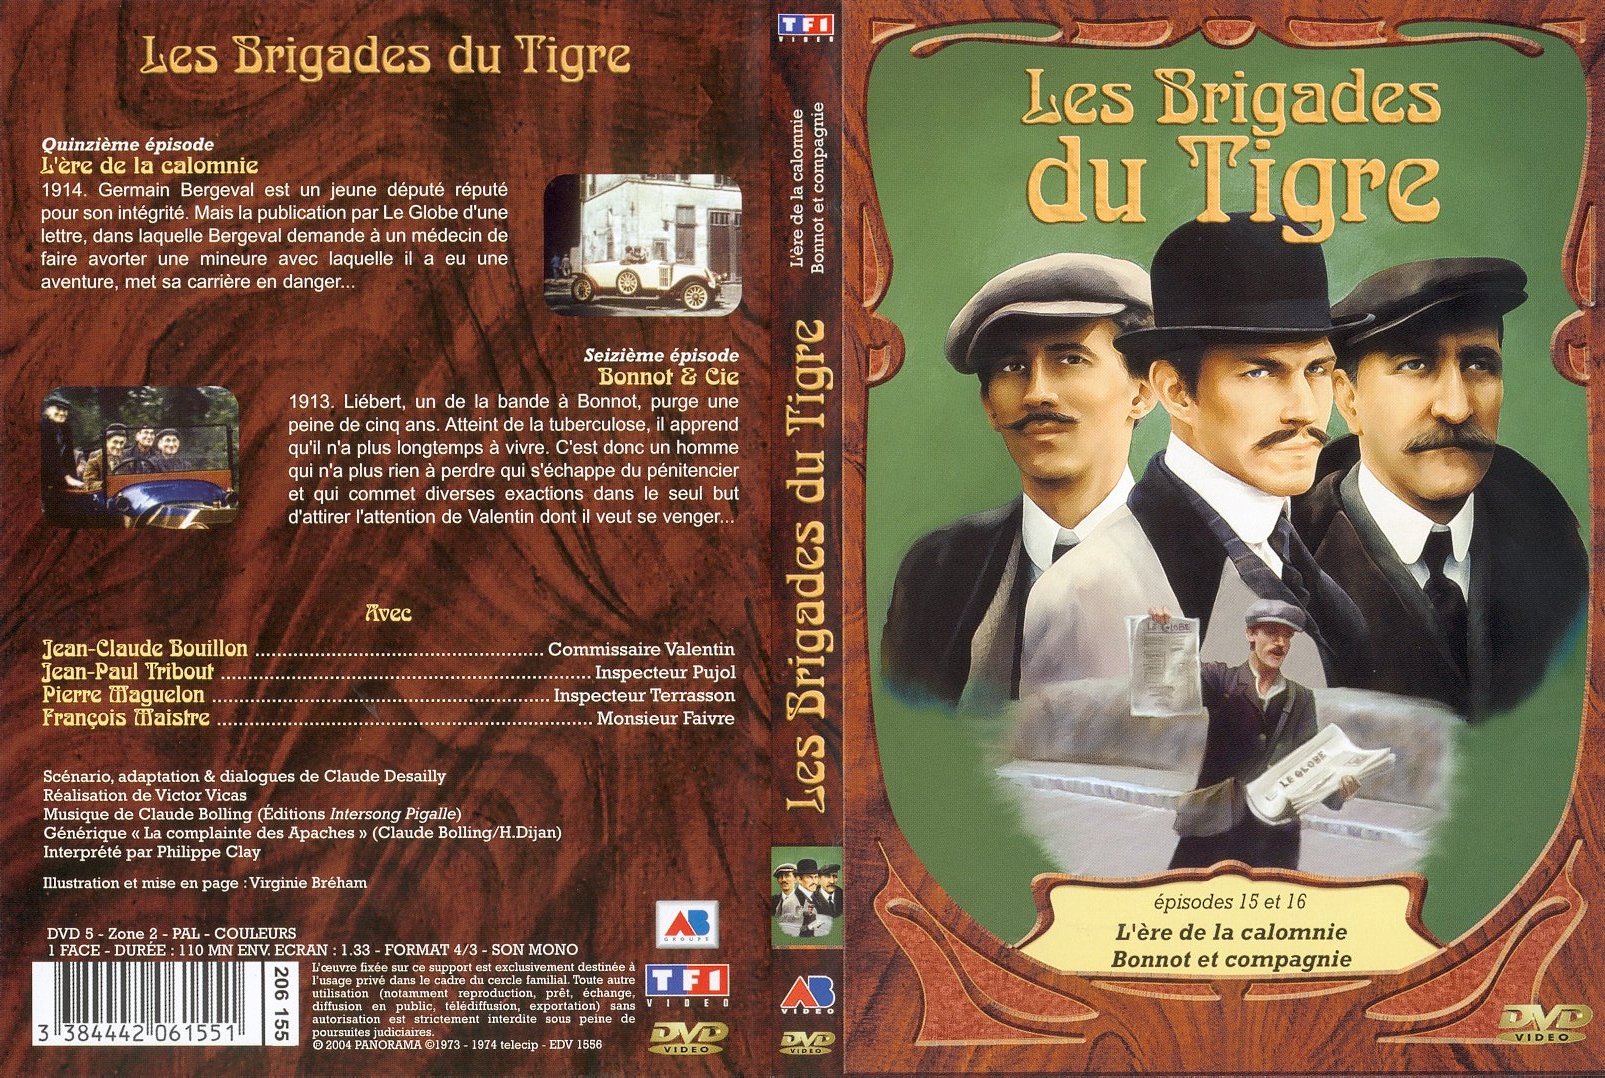 Jaquette DVD Les brigades du tigre vol 8